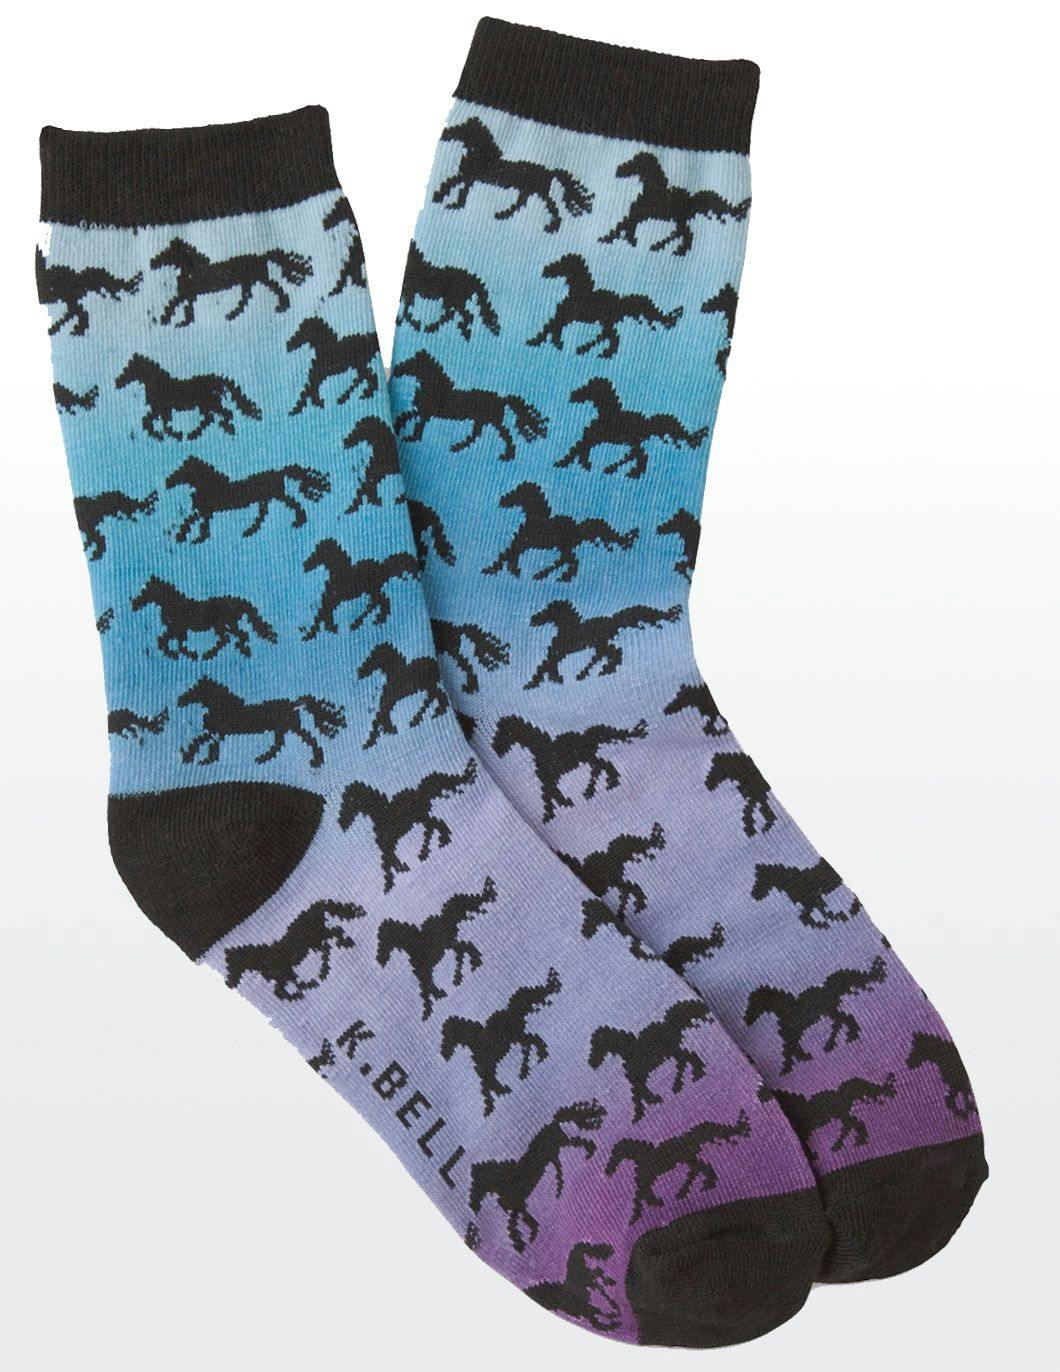 Kbell-womens-horses-running-wild-print-socks